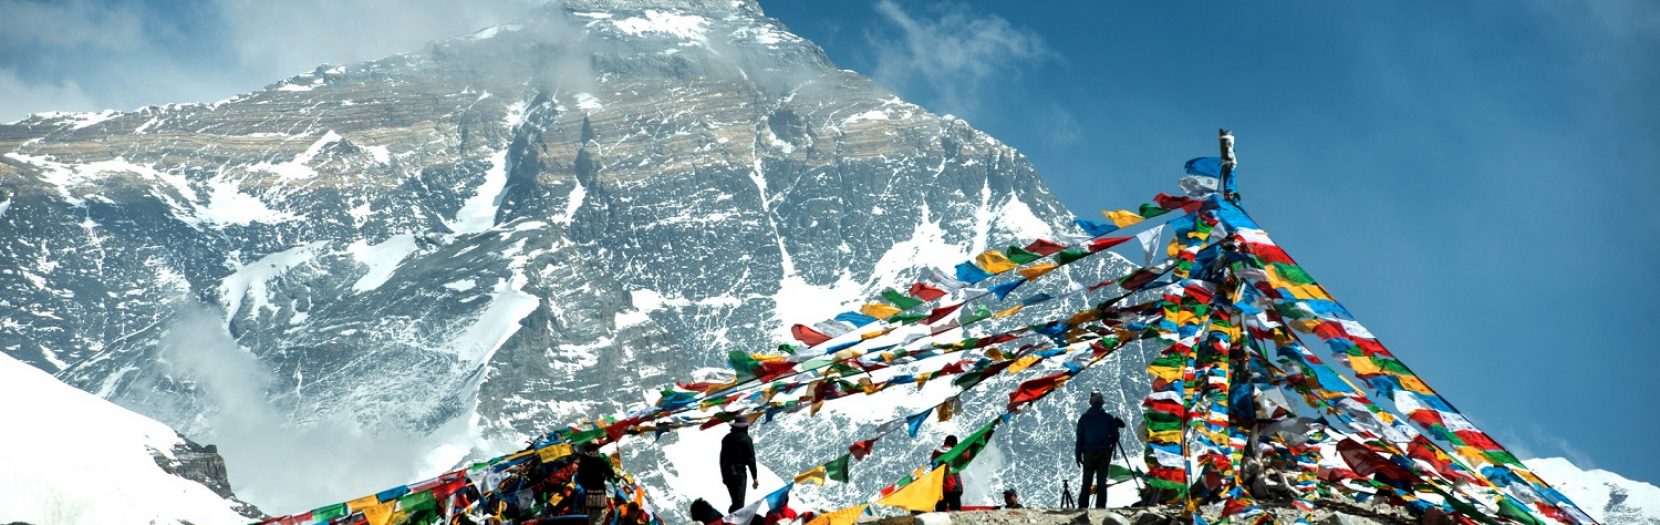 Review Ngắm Đỉnh Everest Mà Không Cần Leo Núi